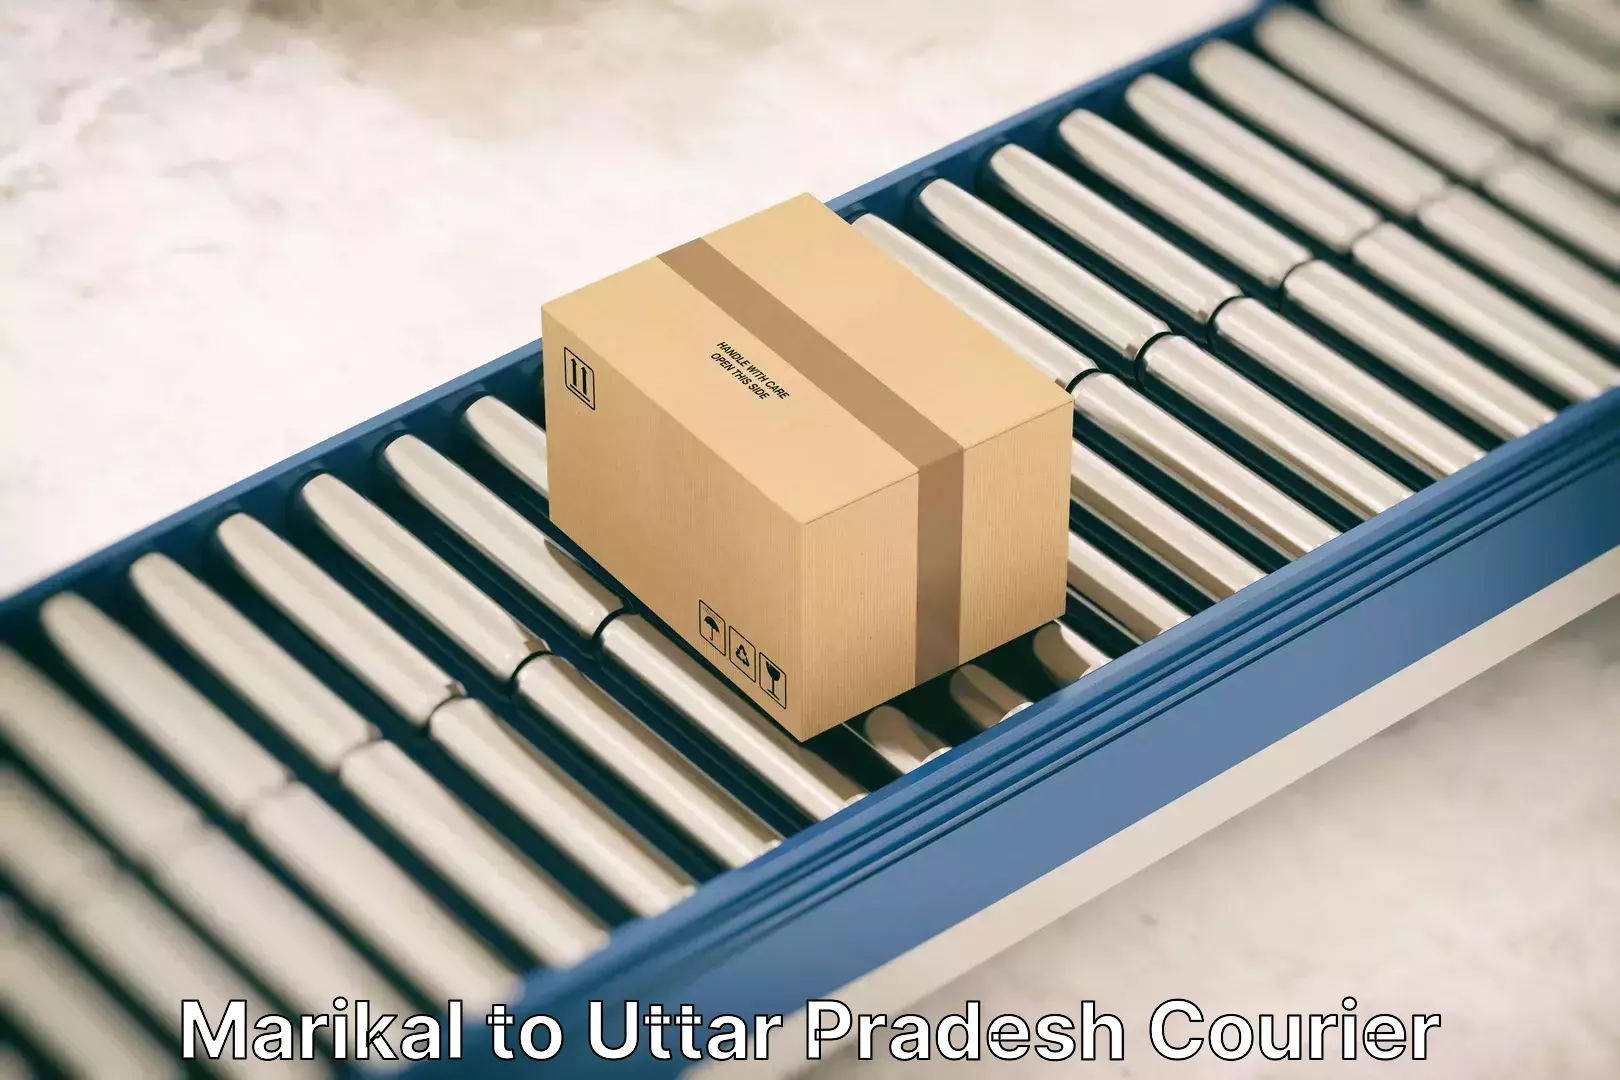 Efficient relocation services Marikal to Uttar Pradesh